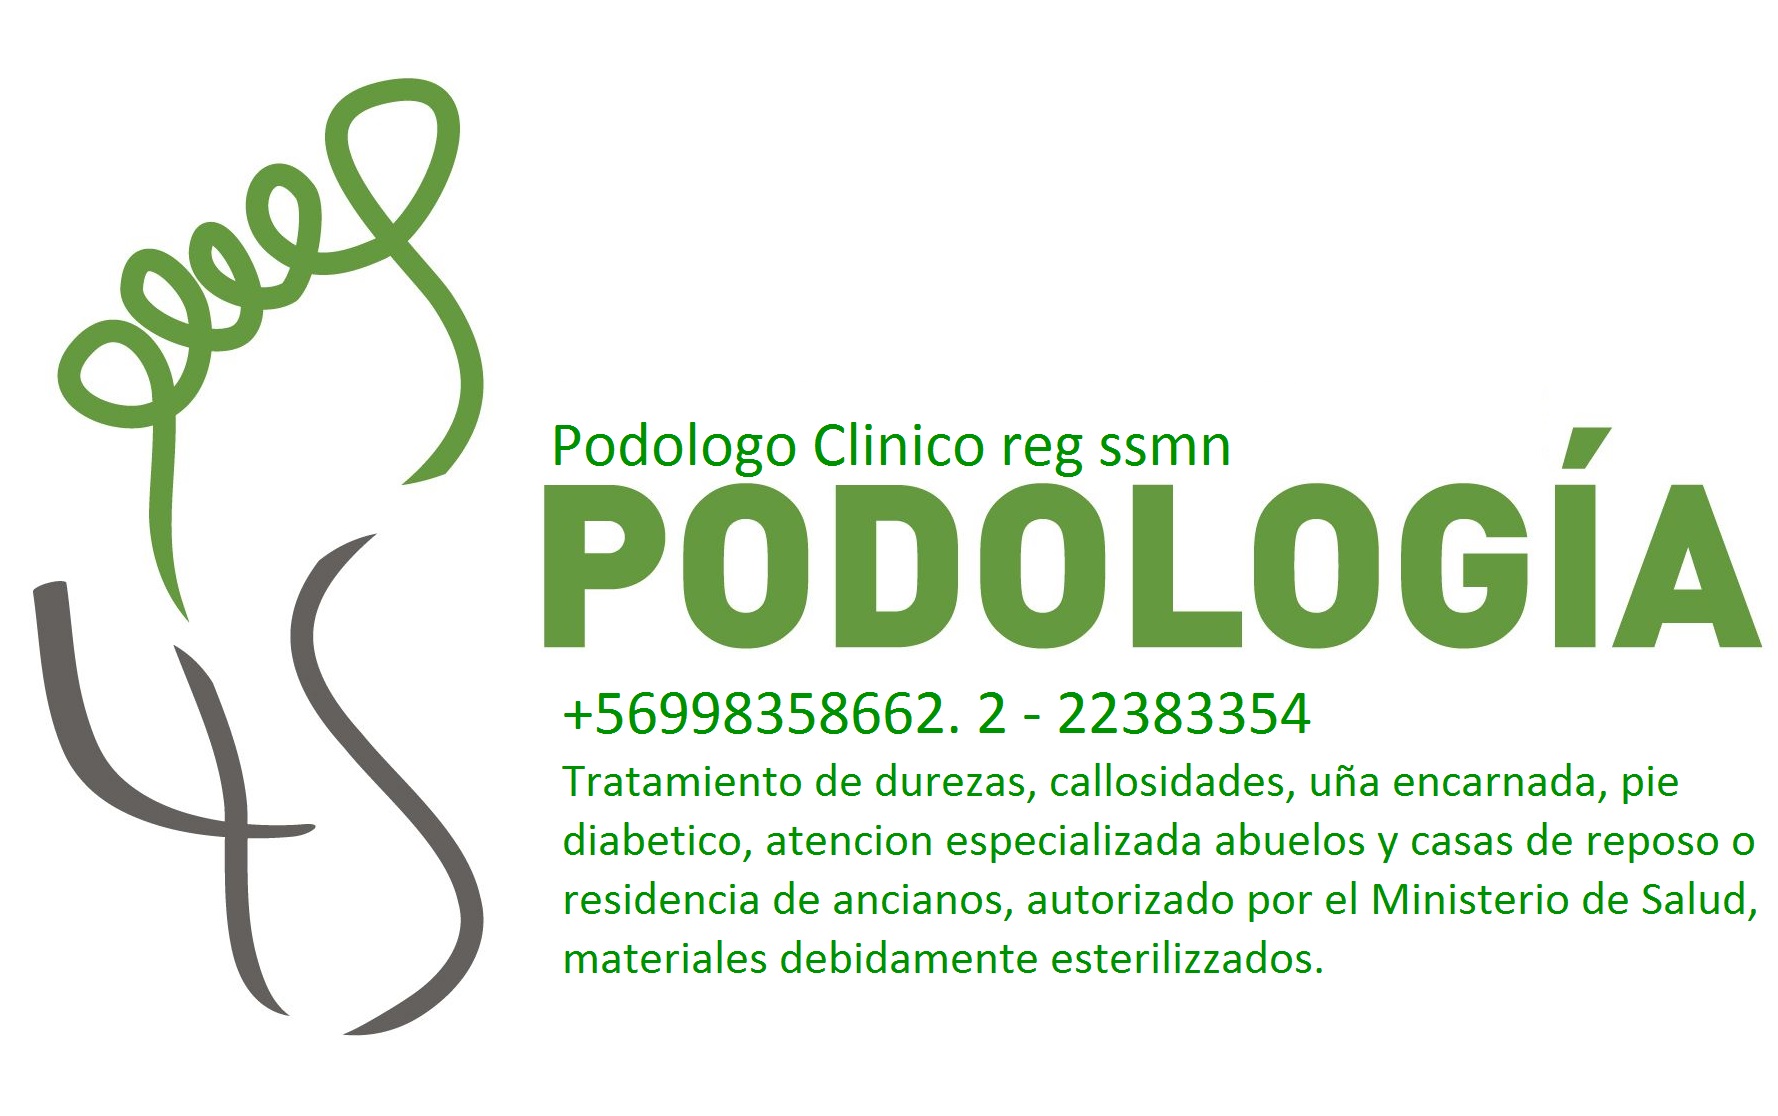 PODOLOGIA PEDIATRICA Las Condes +56998358662